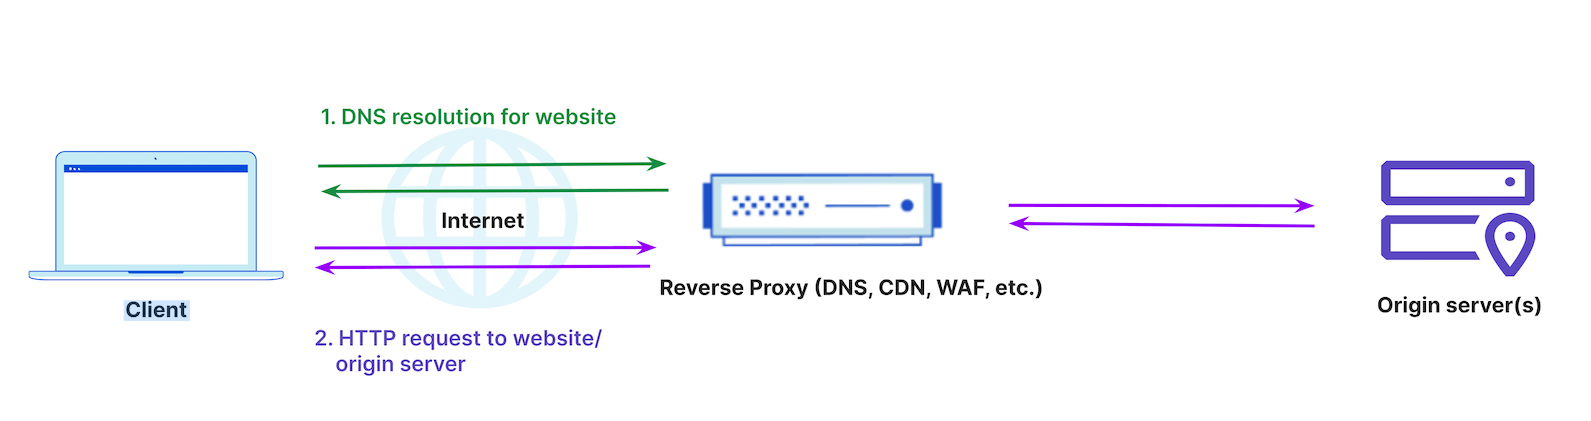 Figure 3: Same vendor providing DNS and security/performance services via proxy